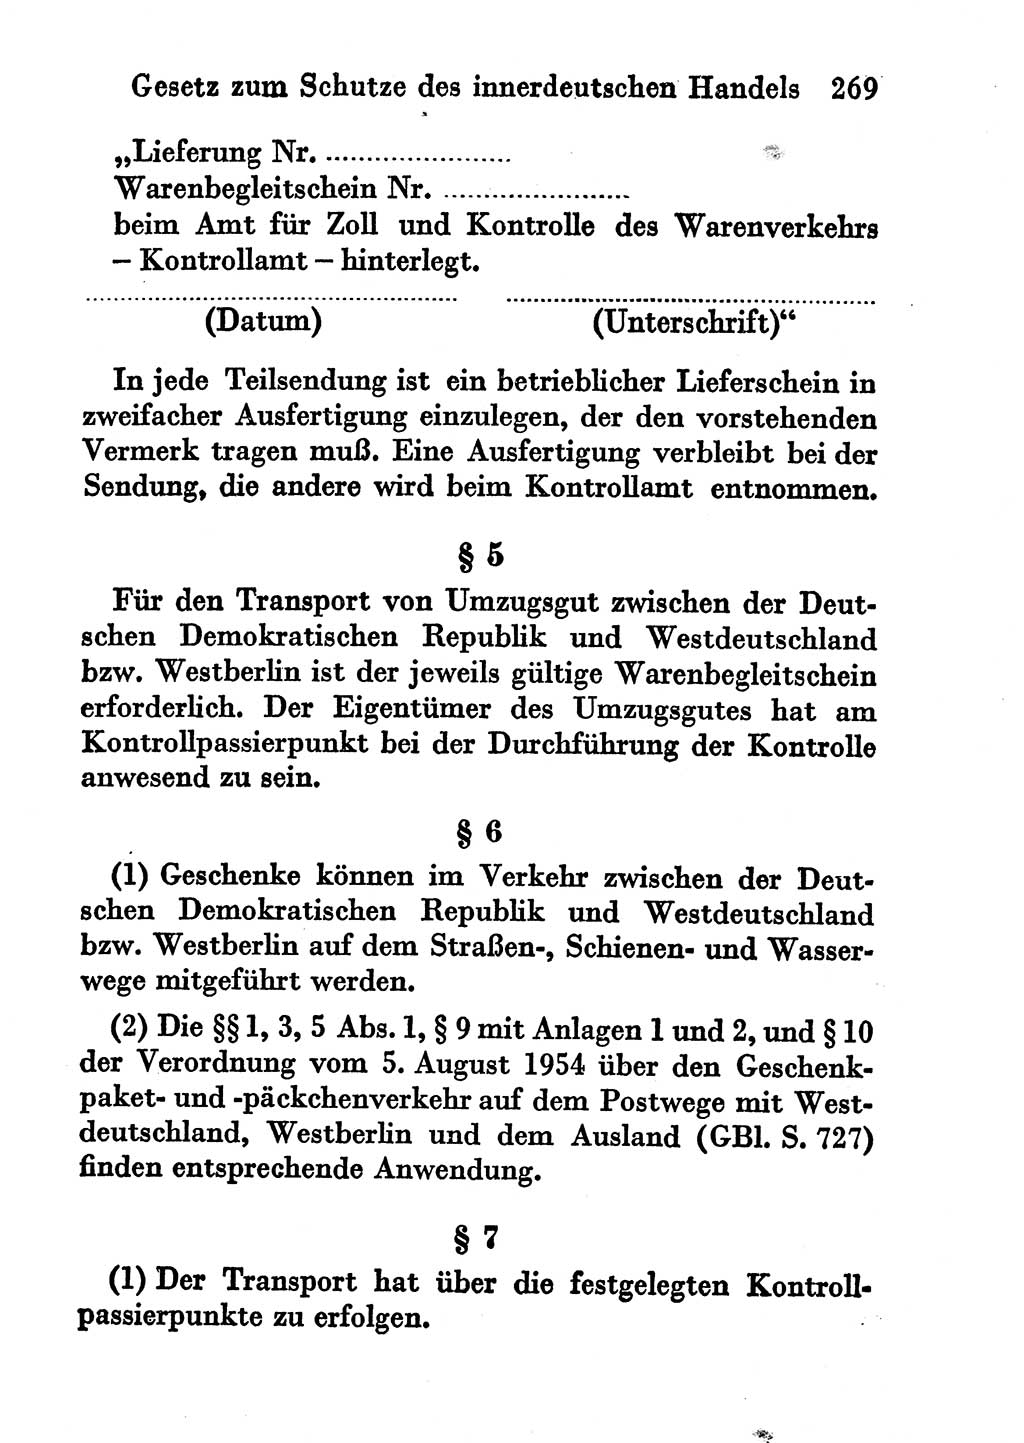 Strafgesetzbuch (StGB) und andere Strafgesetze [Deutsche Demokratische Republik (DDR)] 1956, Seite 269 (StGB Strafges. DDR 1956, S. 269)